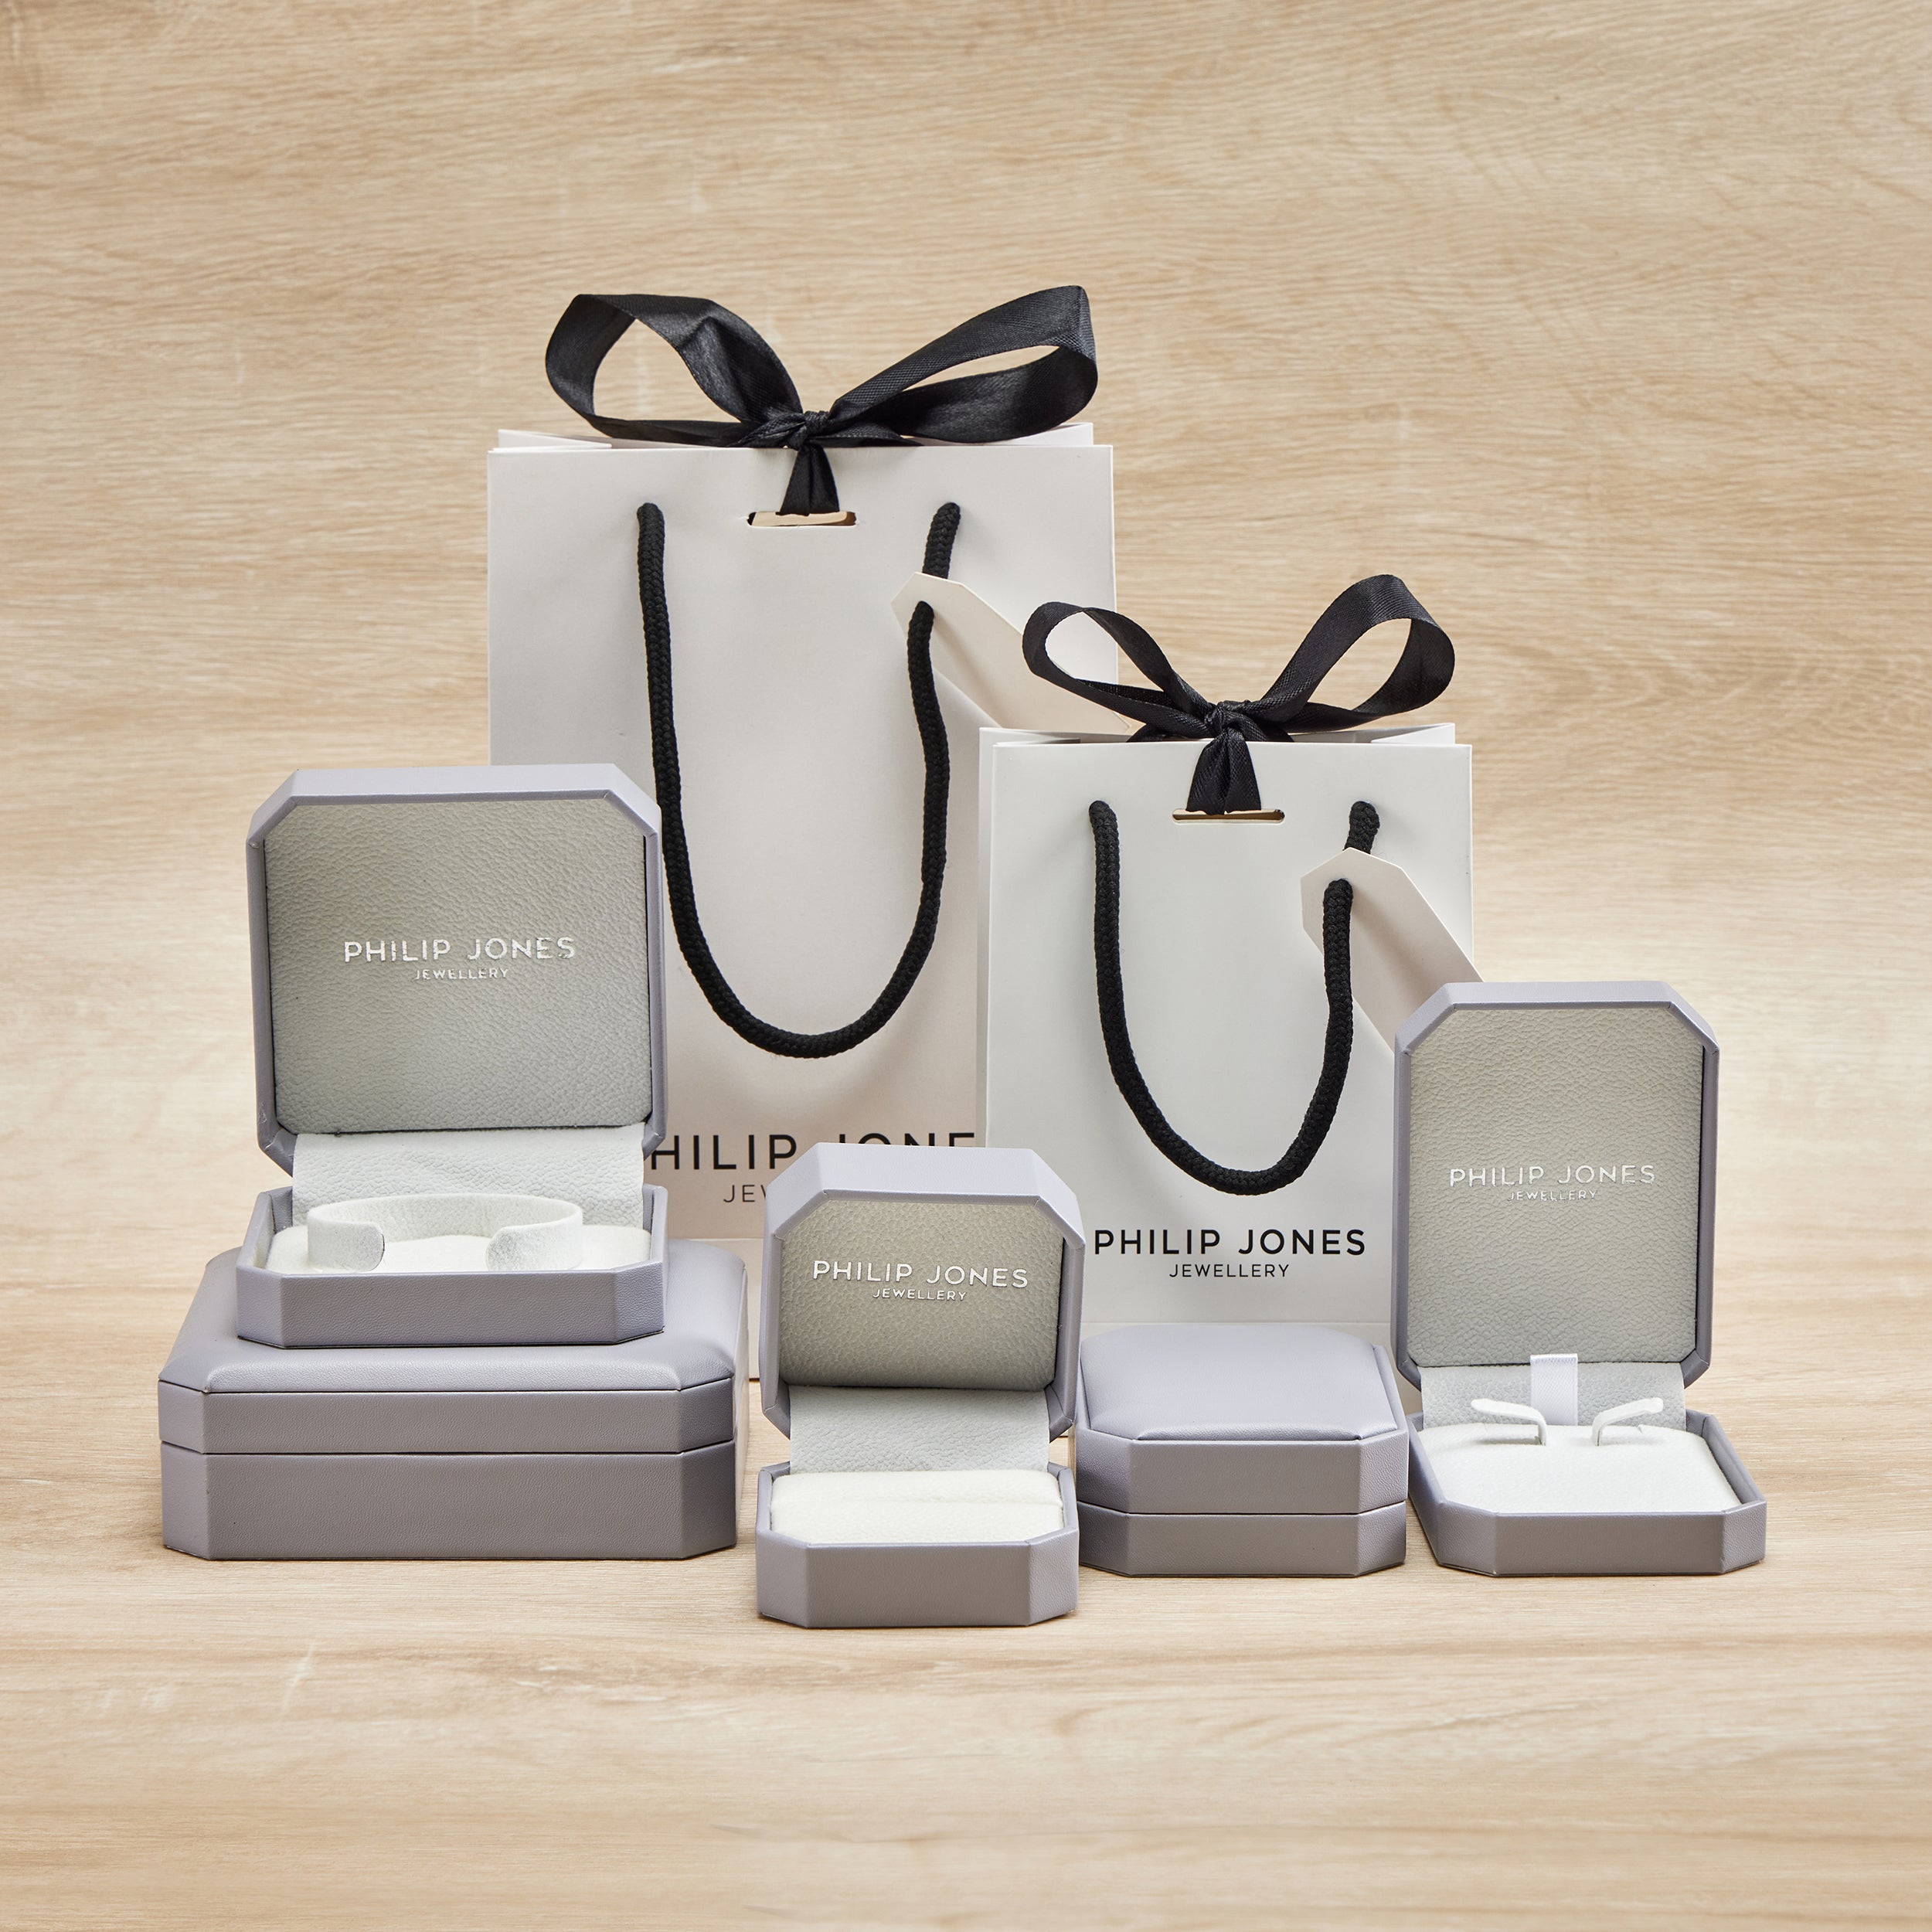 Image of Philip Jones Gift Box with Gift Bag and Polishing Cloth